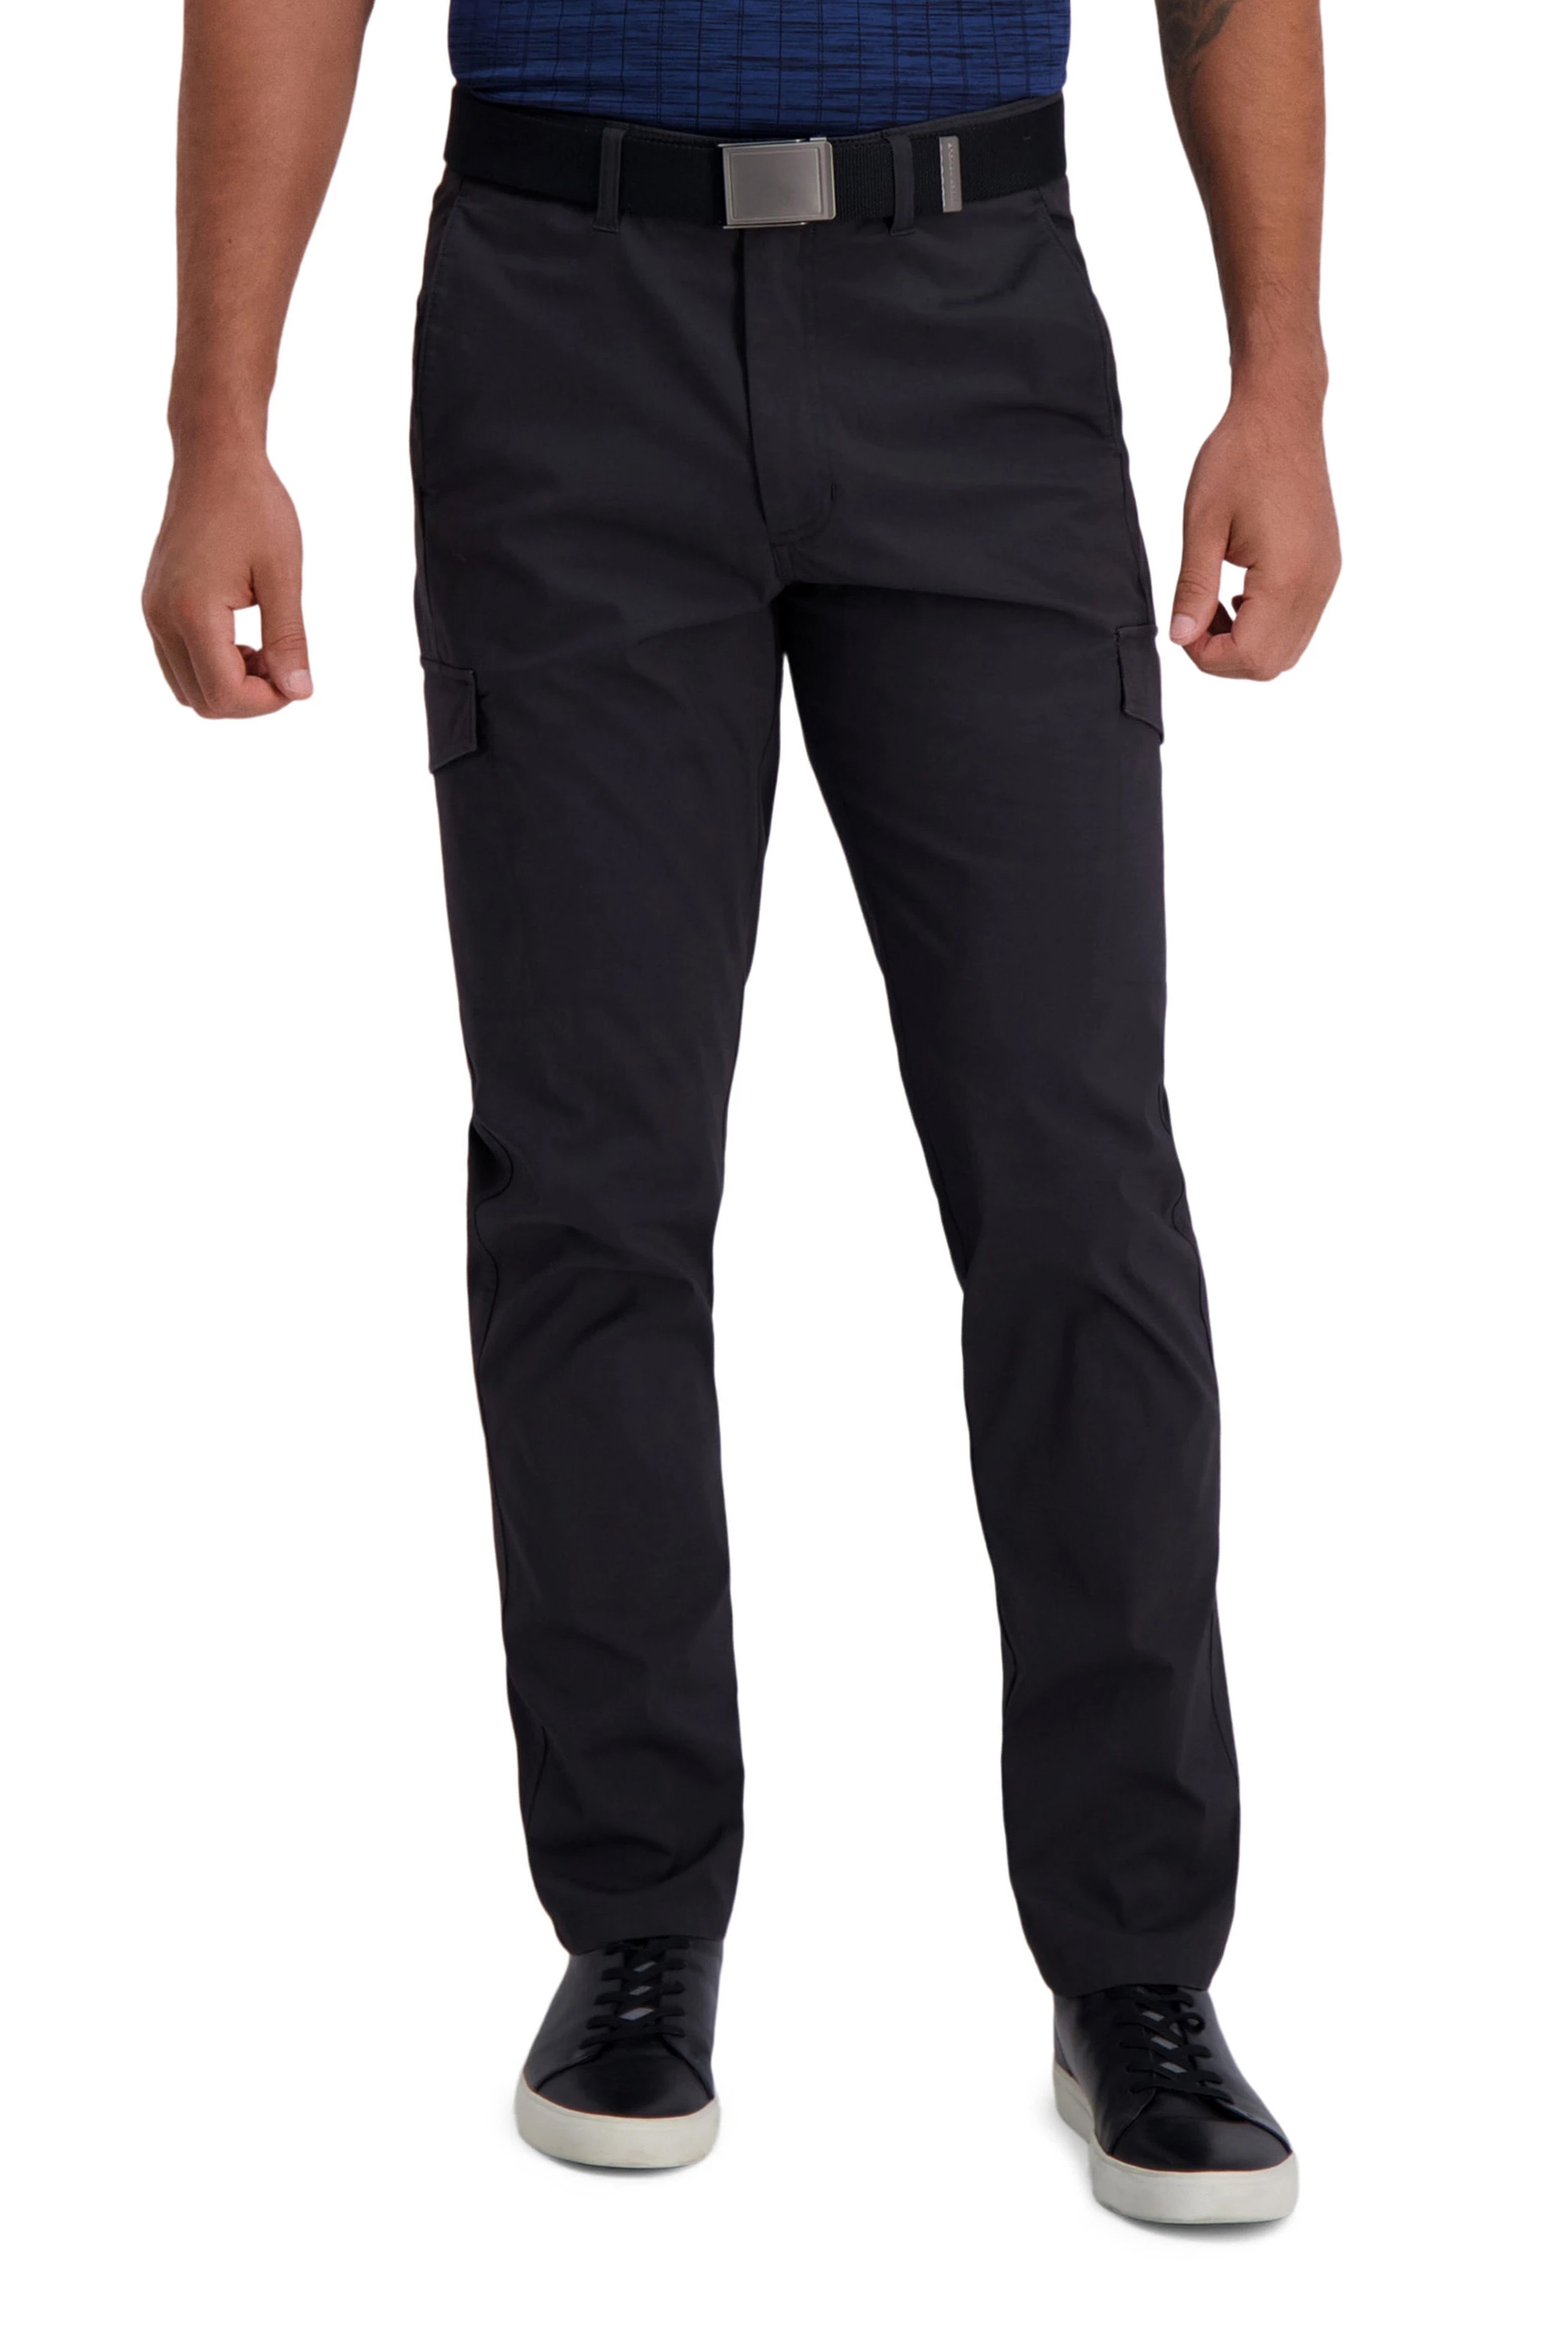 Haggar Men's The Active Series Slim Fit Flat Front Pant, Solid Black, 36W /  30L price in Saudi Arabia,  Saudi Arabia